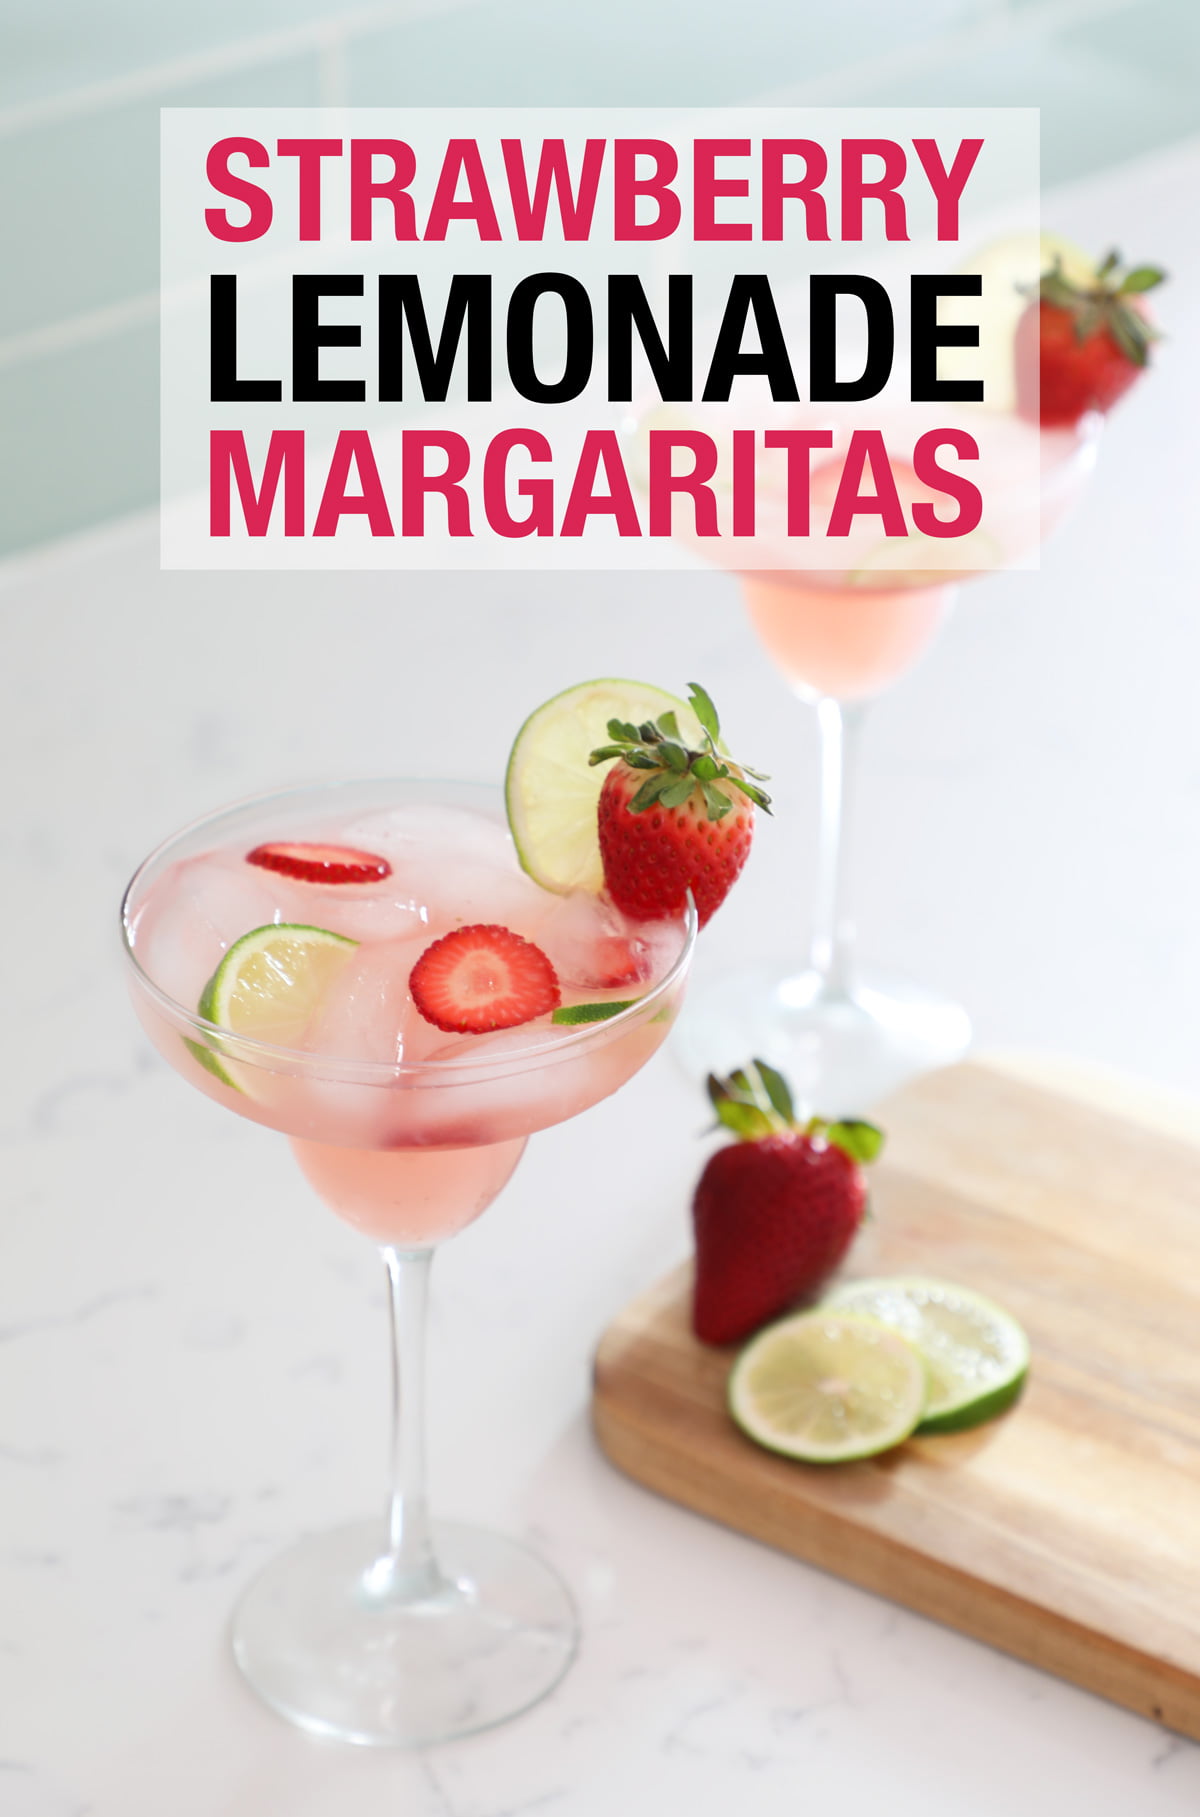 Strawberry Lemonade Margaritas